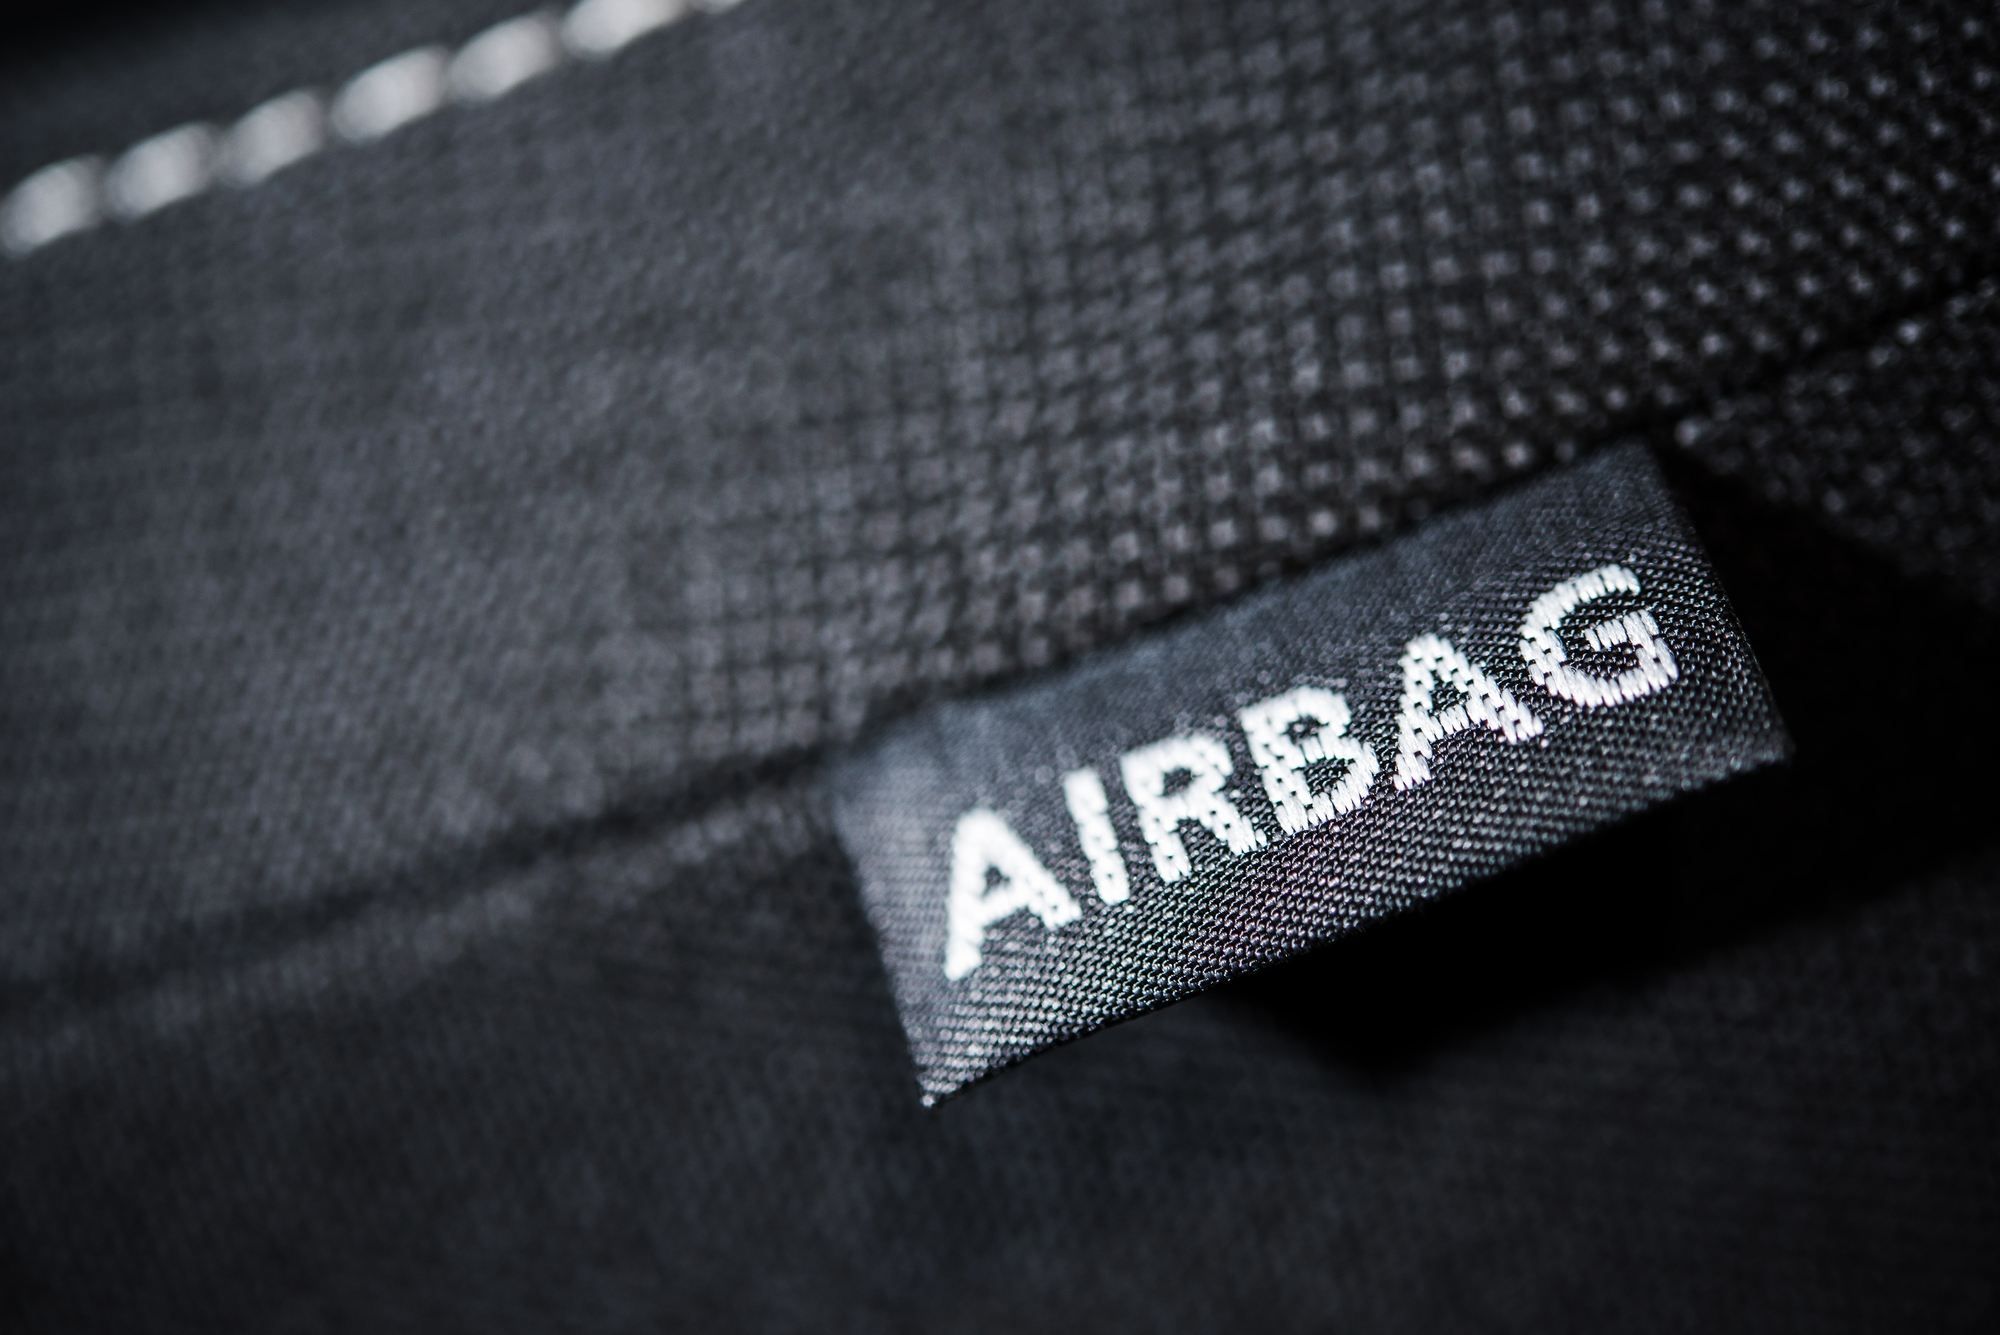 Is a Tesla airbag safe?